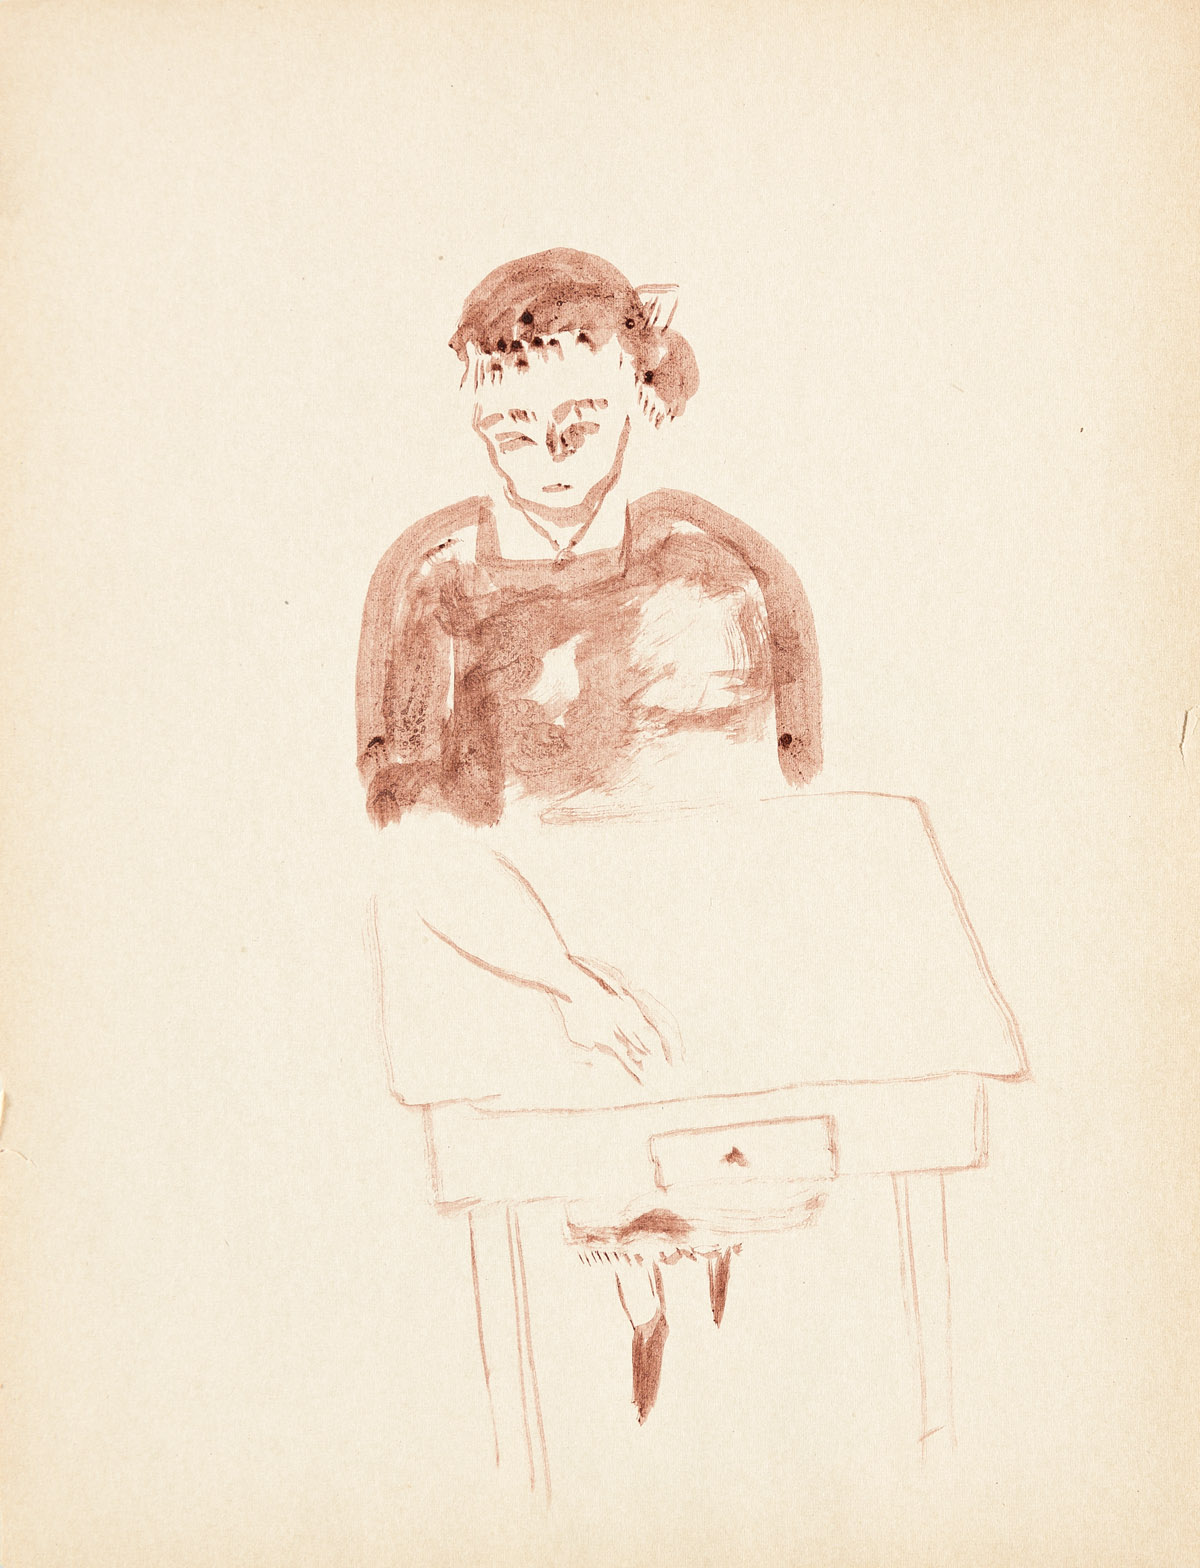 YASUO KUNIYOSHI Sketchbook with drawings.